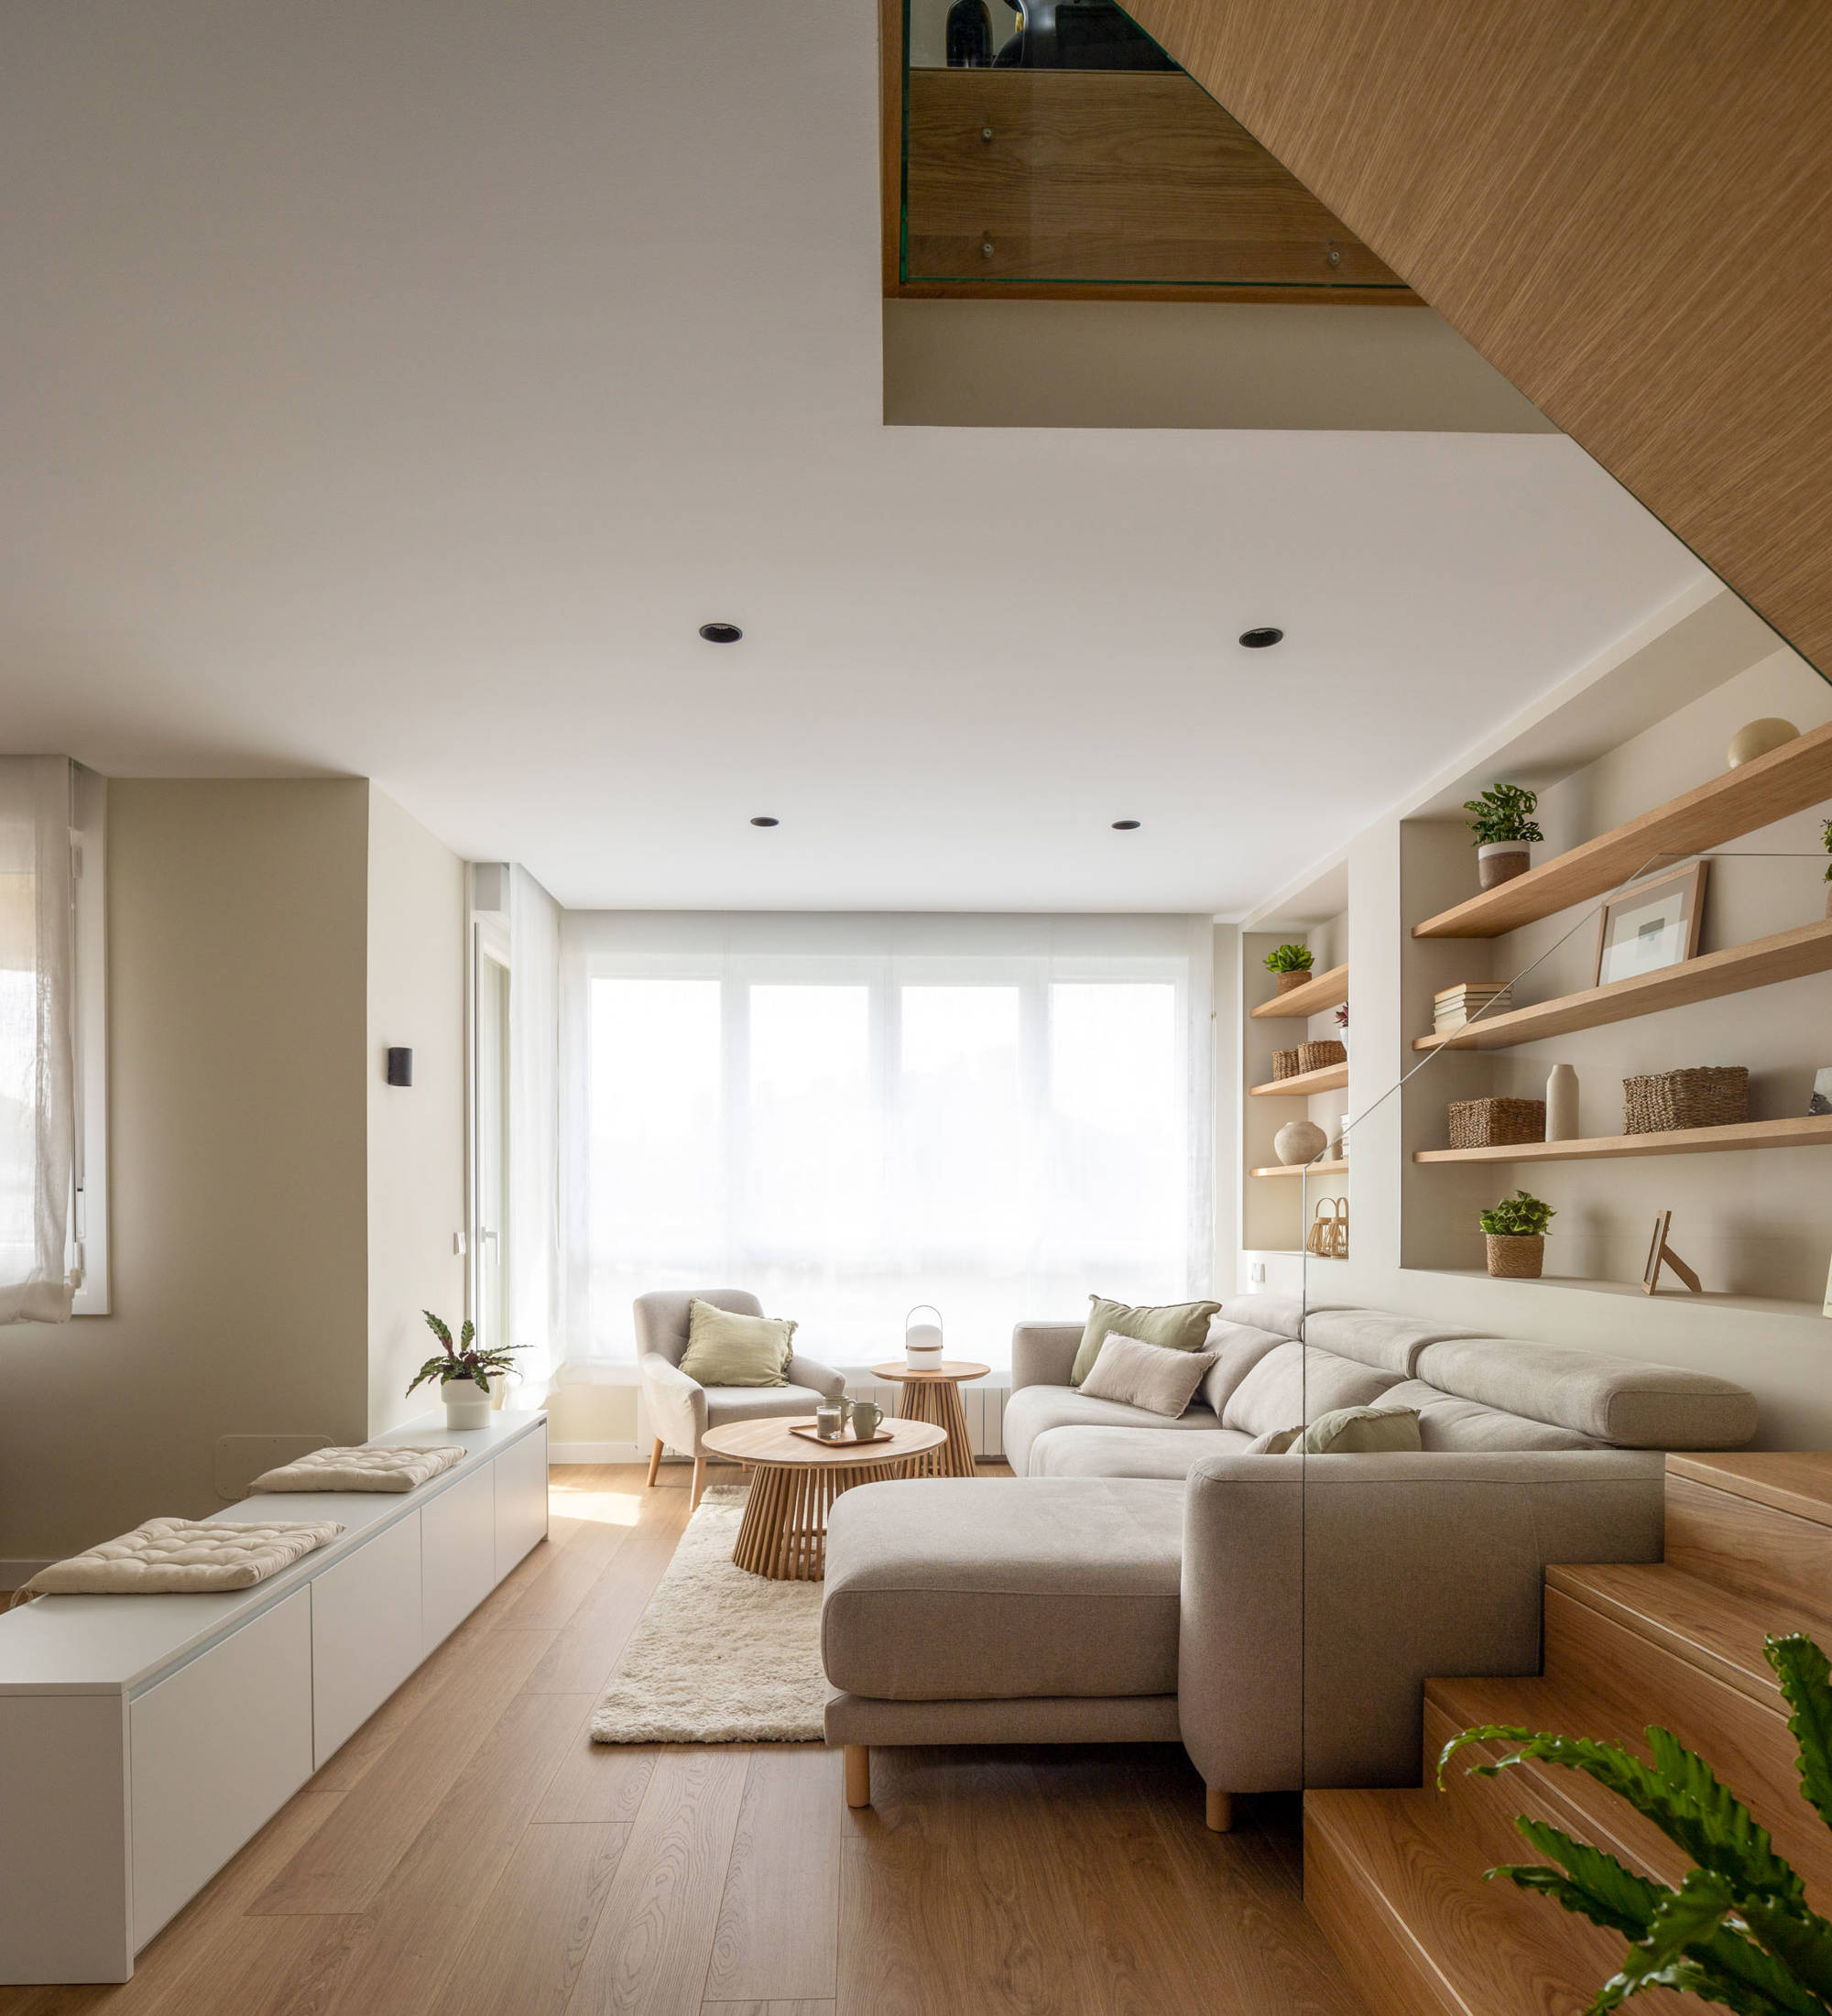 Salón moderno con escalera de madera, sofá beige con chaise longe y ventanal.